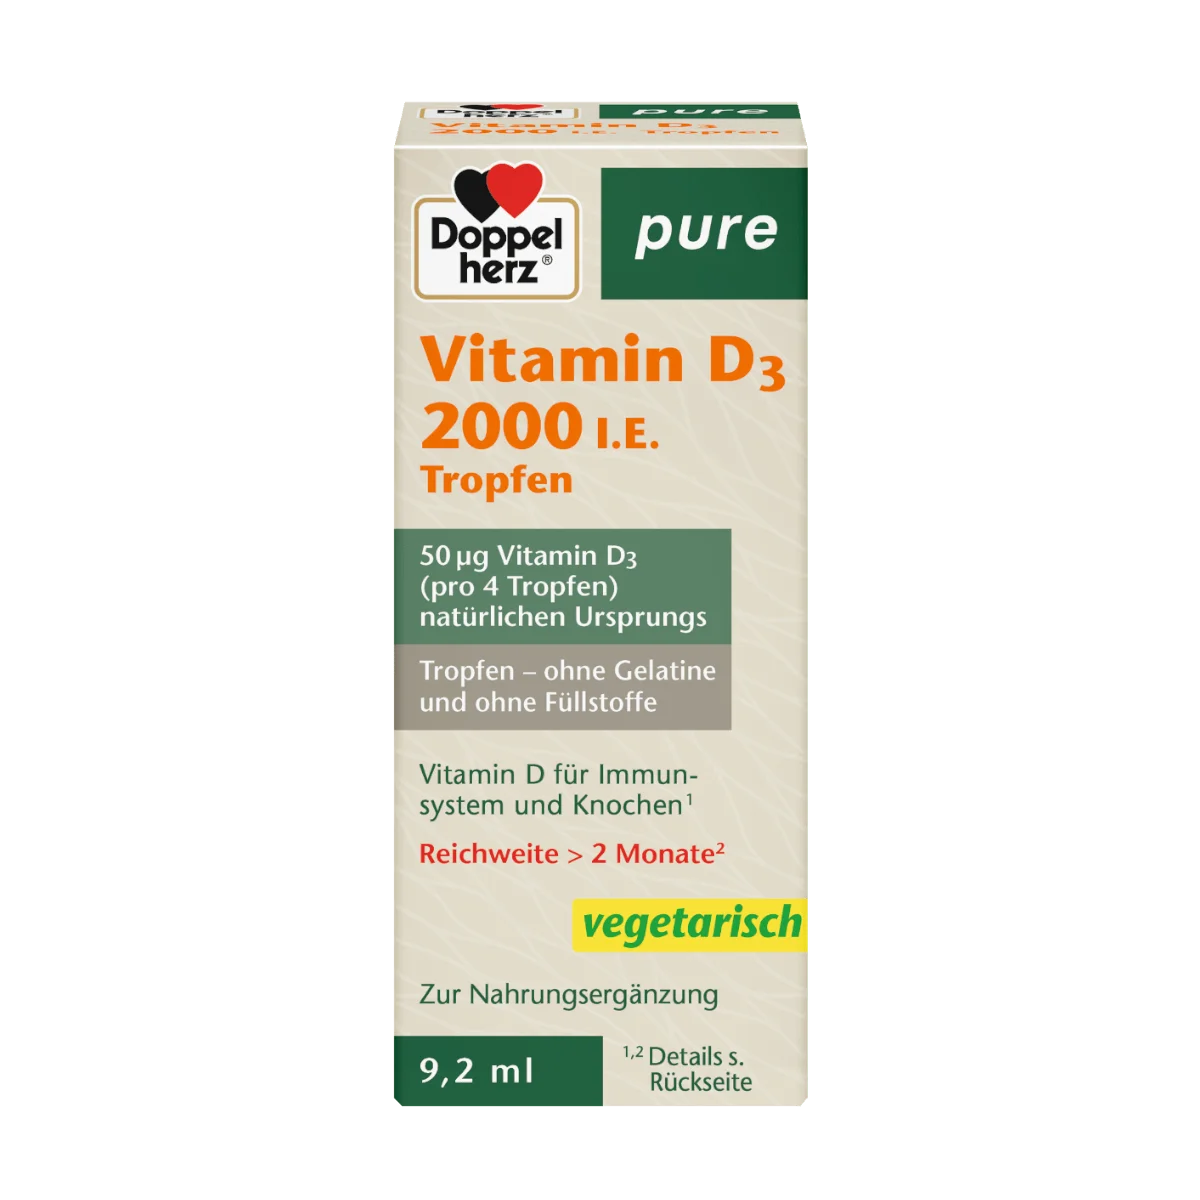 Doppelherz pure Vitamin D3 2000 I.E. Tropfen 9,2 ml